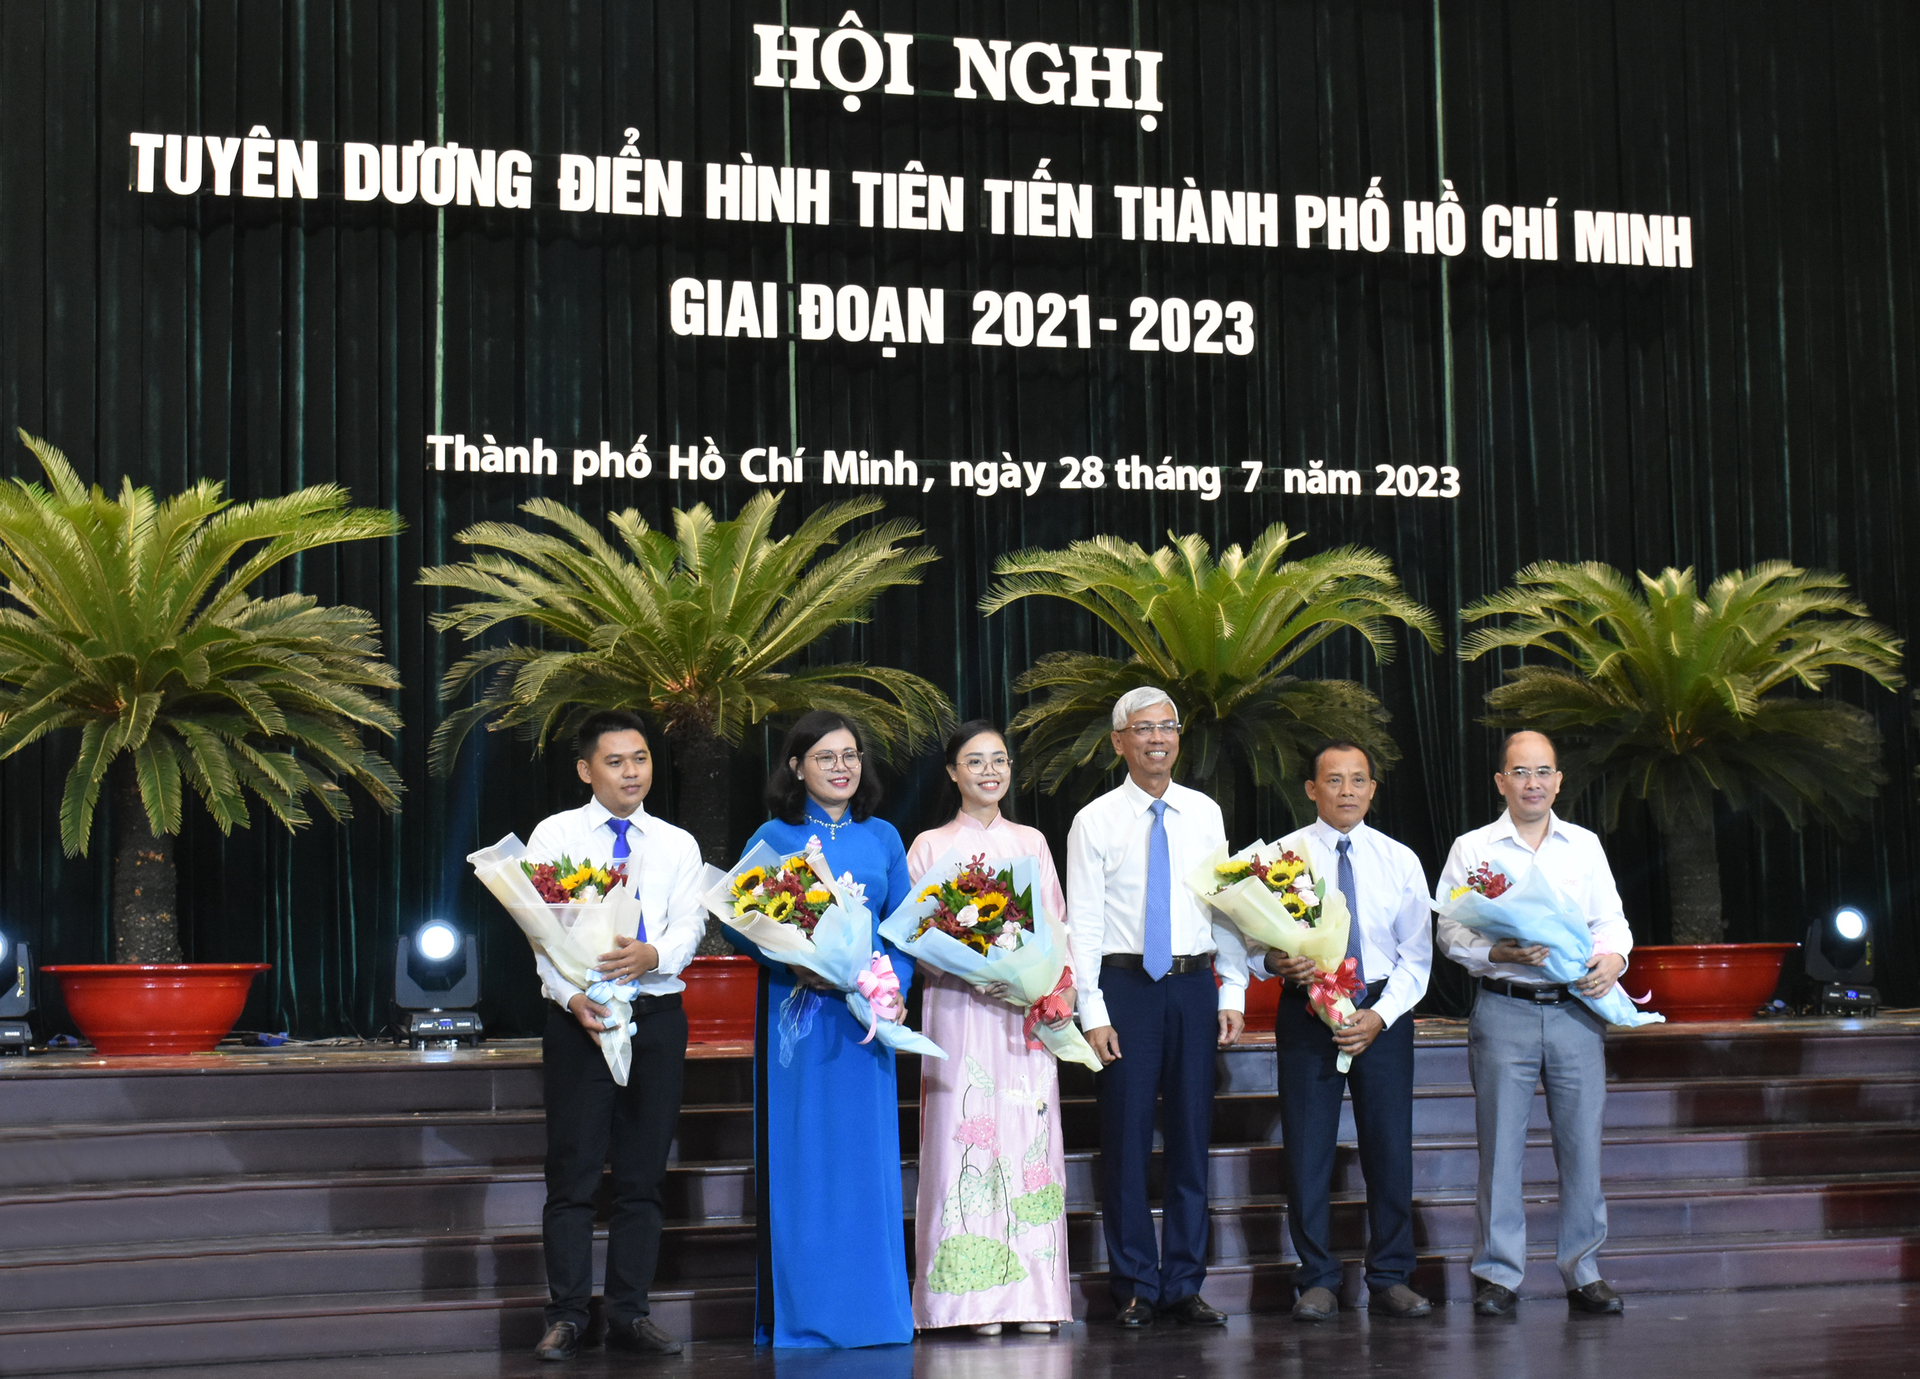 Phó Chủ tịch UBND TP.HCM Võ Văn Hoan (thứ 3 từ phải sang) trao tặng và chúc mừng cá nhân, tập thể điển hình tiêu biểu cấp thành phố. Ảnh: N.T.